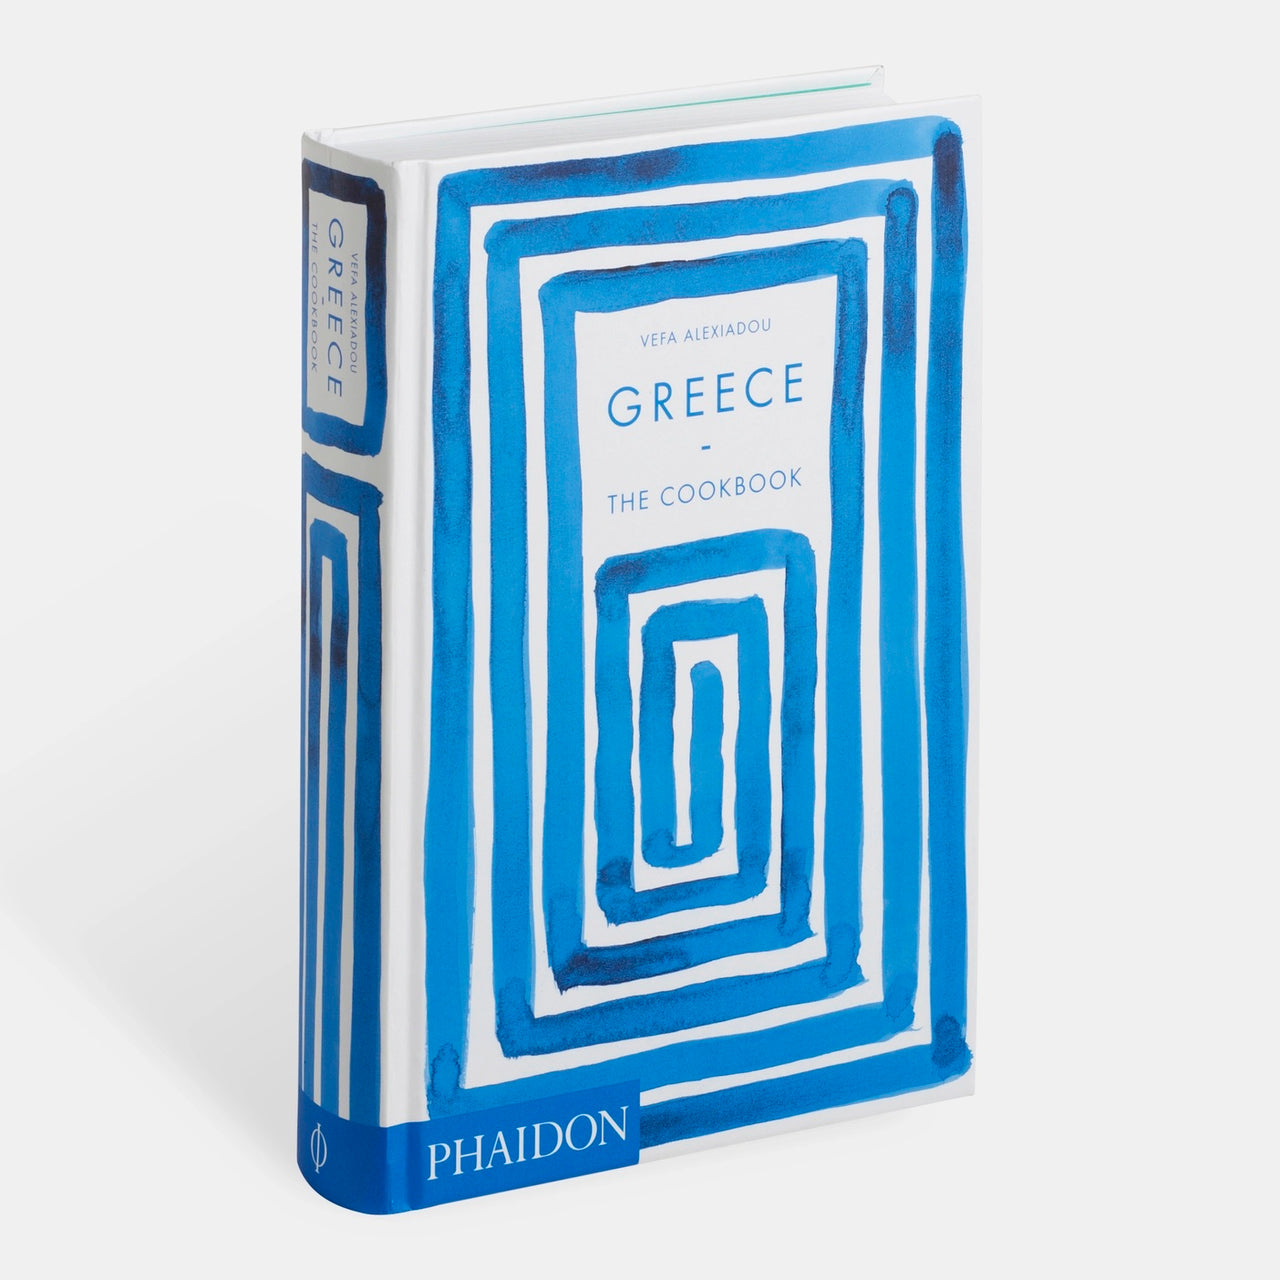 GREECE: THE COOKBOOK